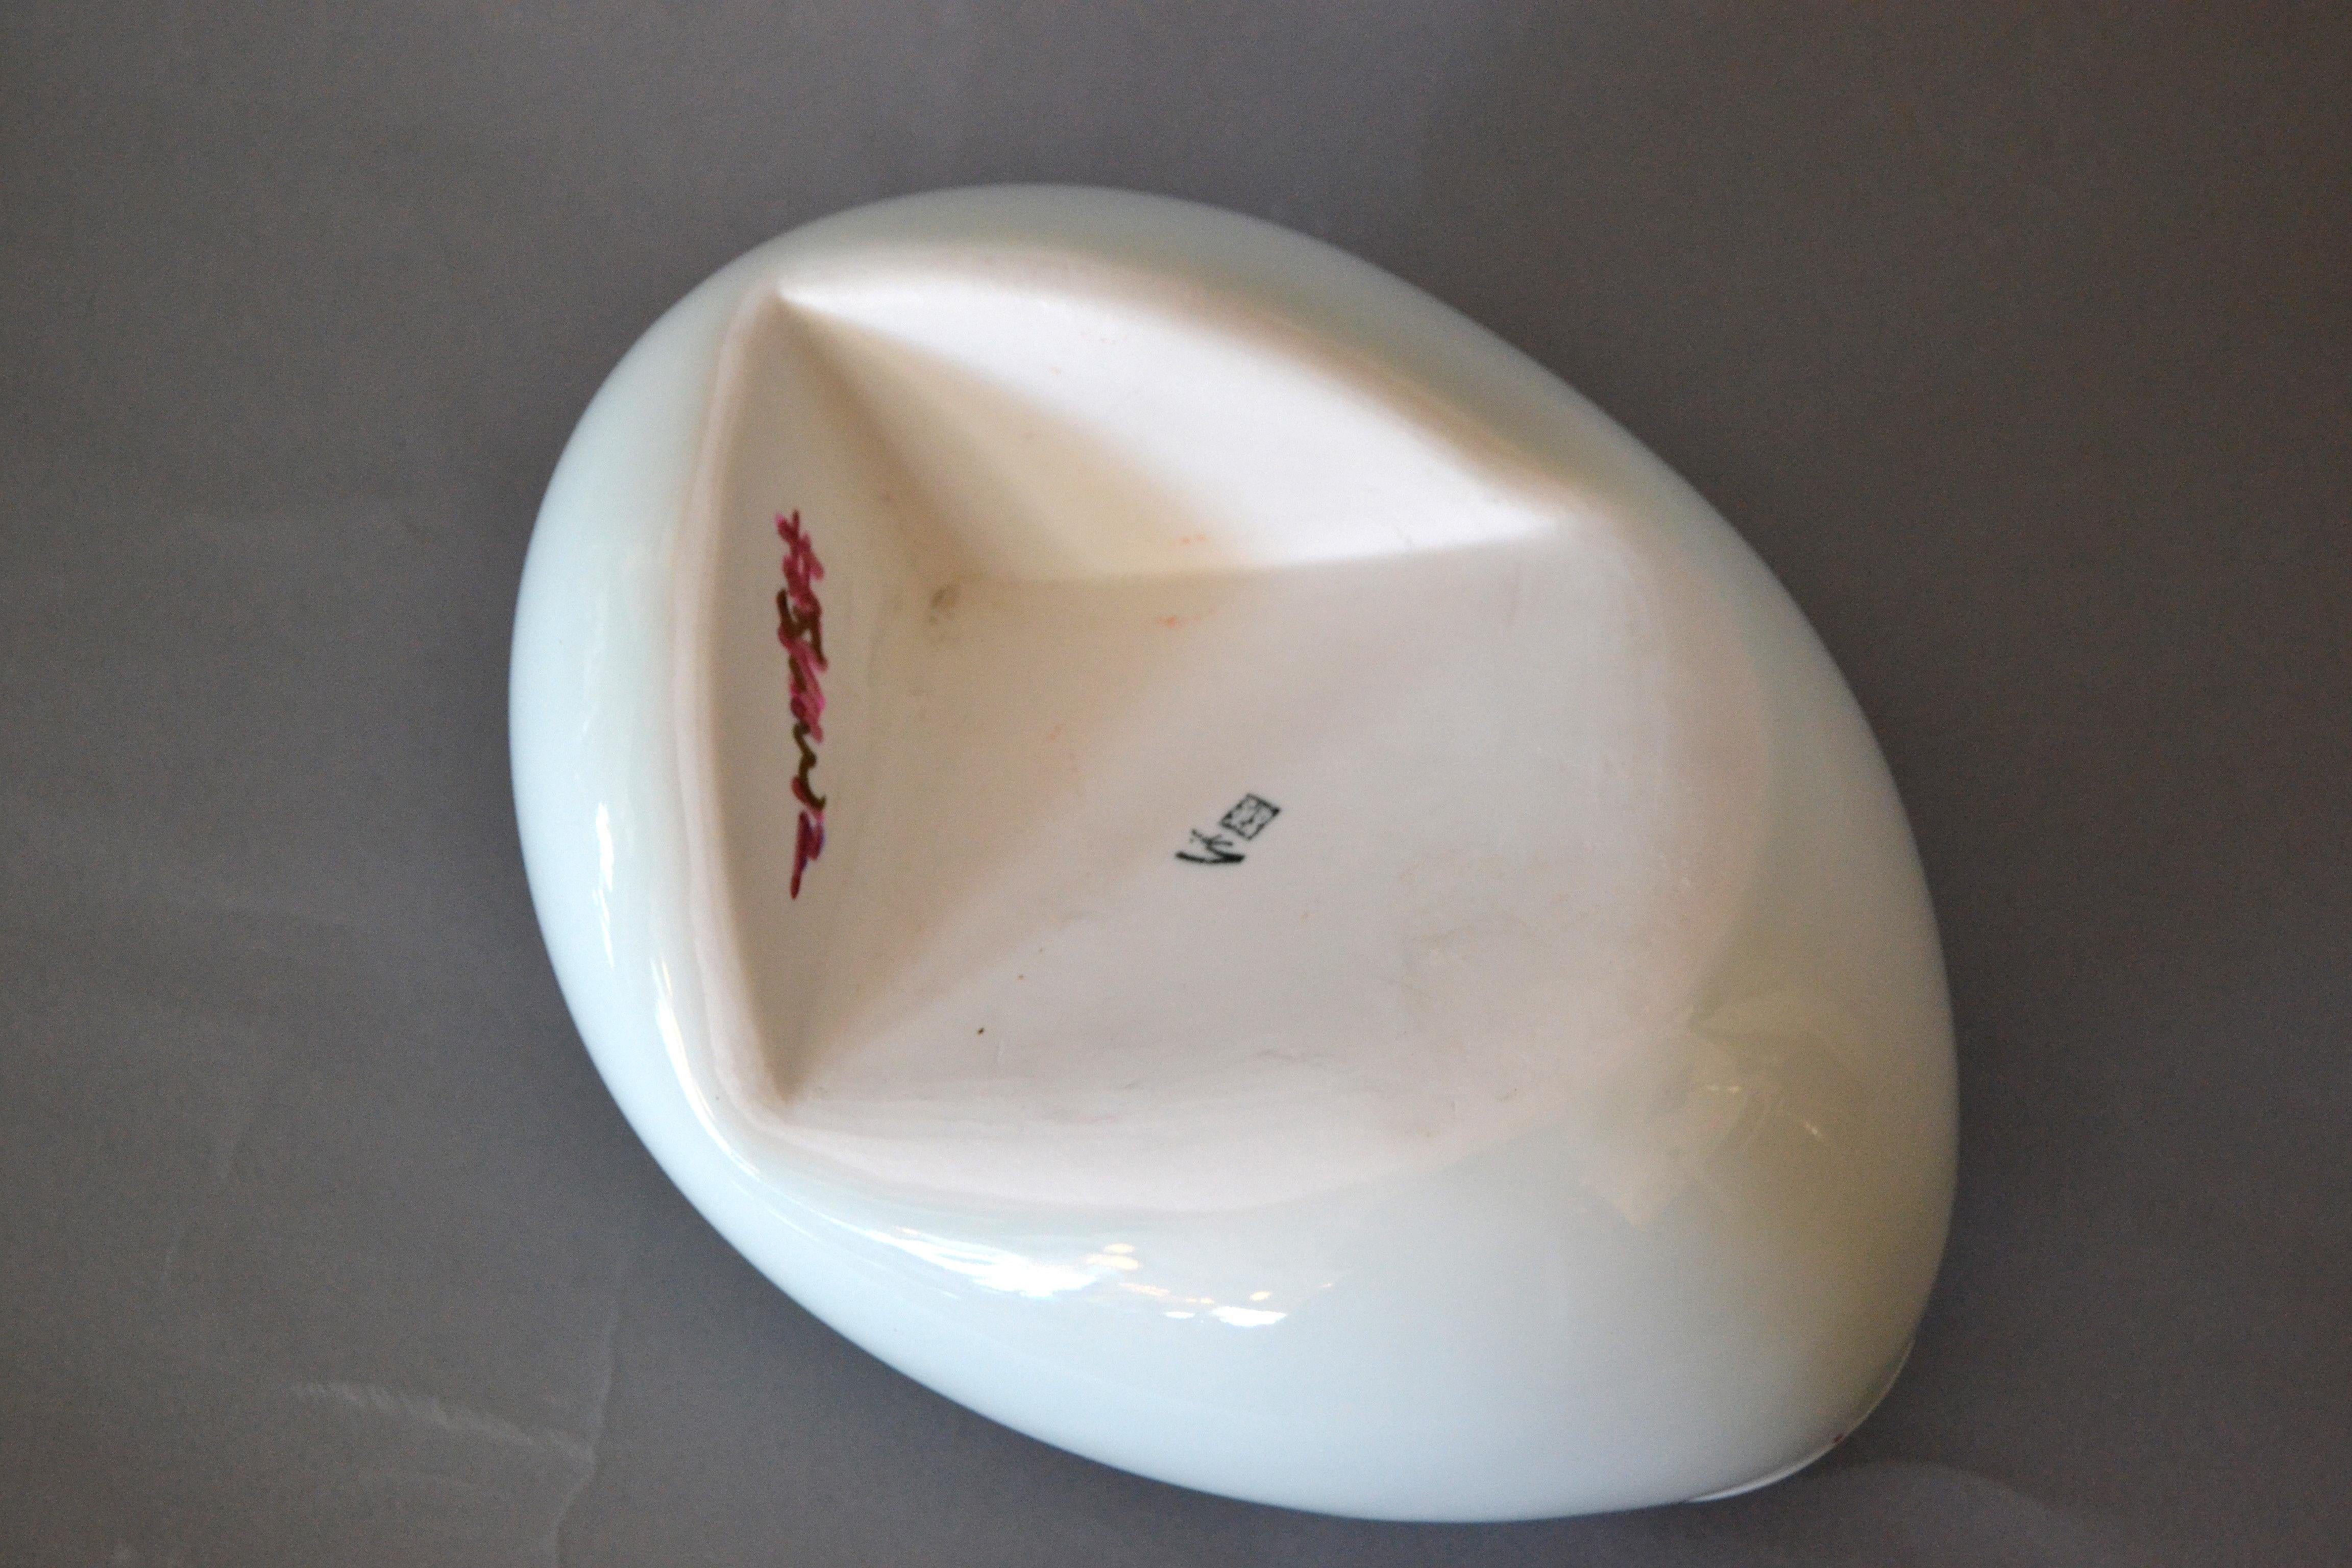 Organic Asian Modern White Ceramic Water Bag Vase Made by Spin Ceramics Shanghai 2